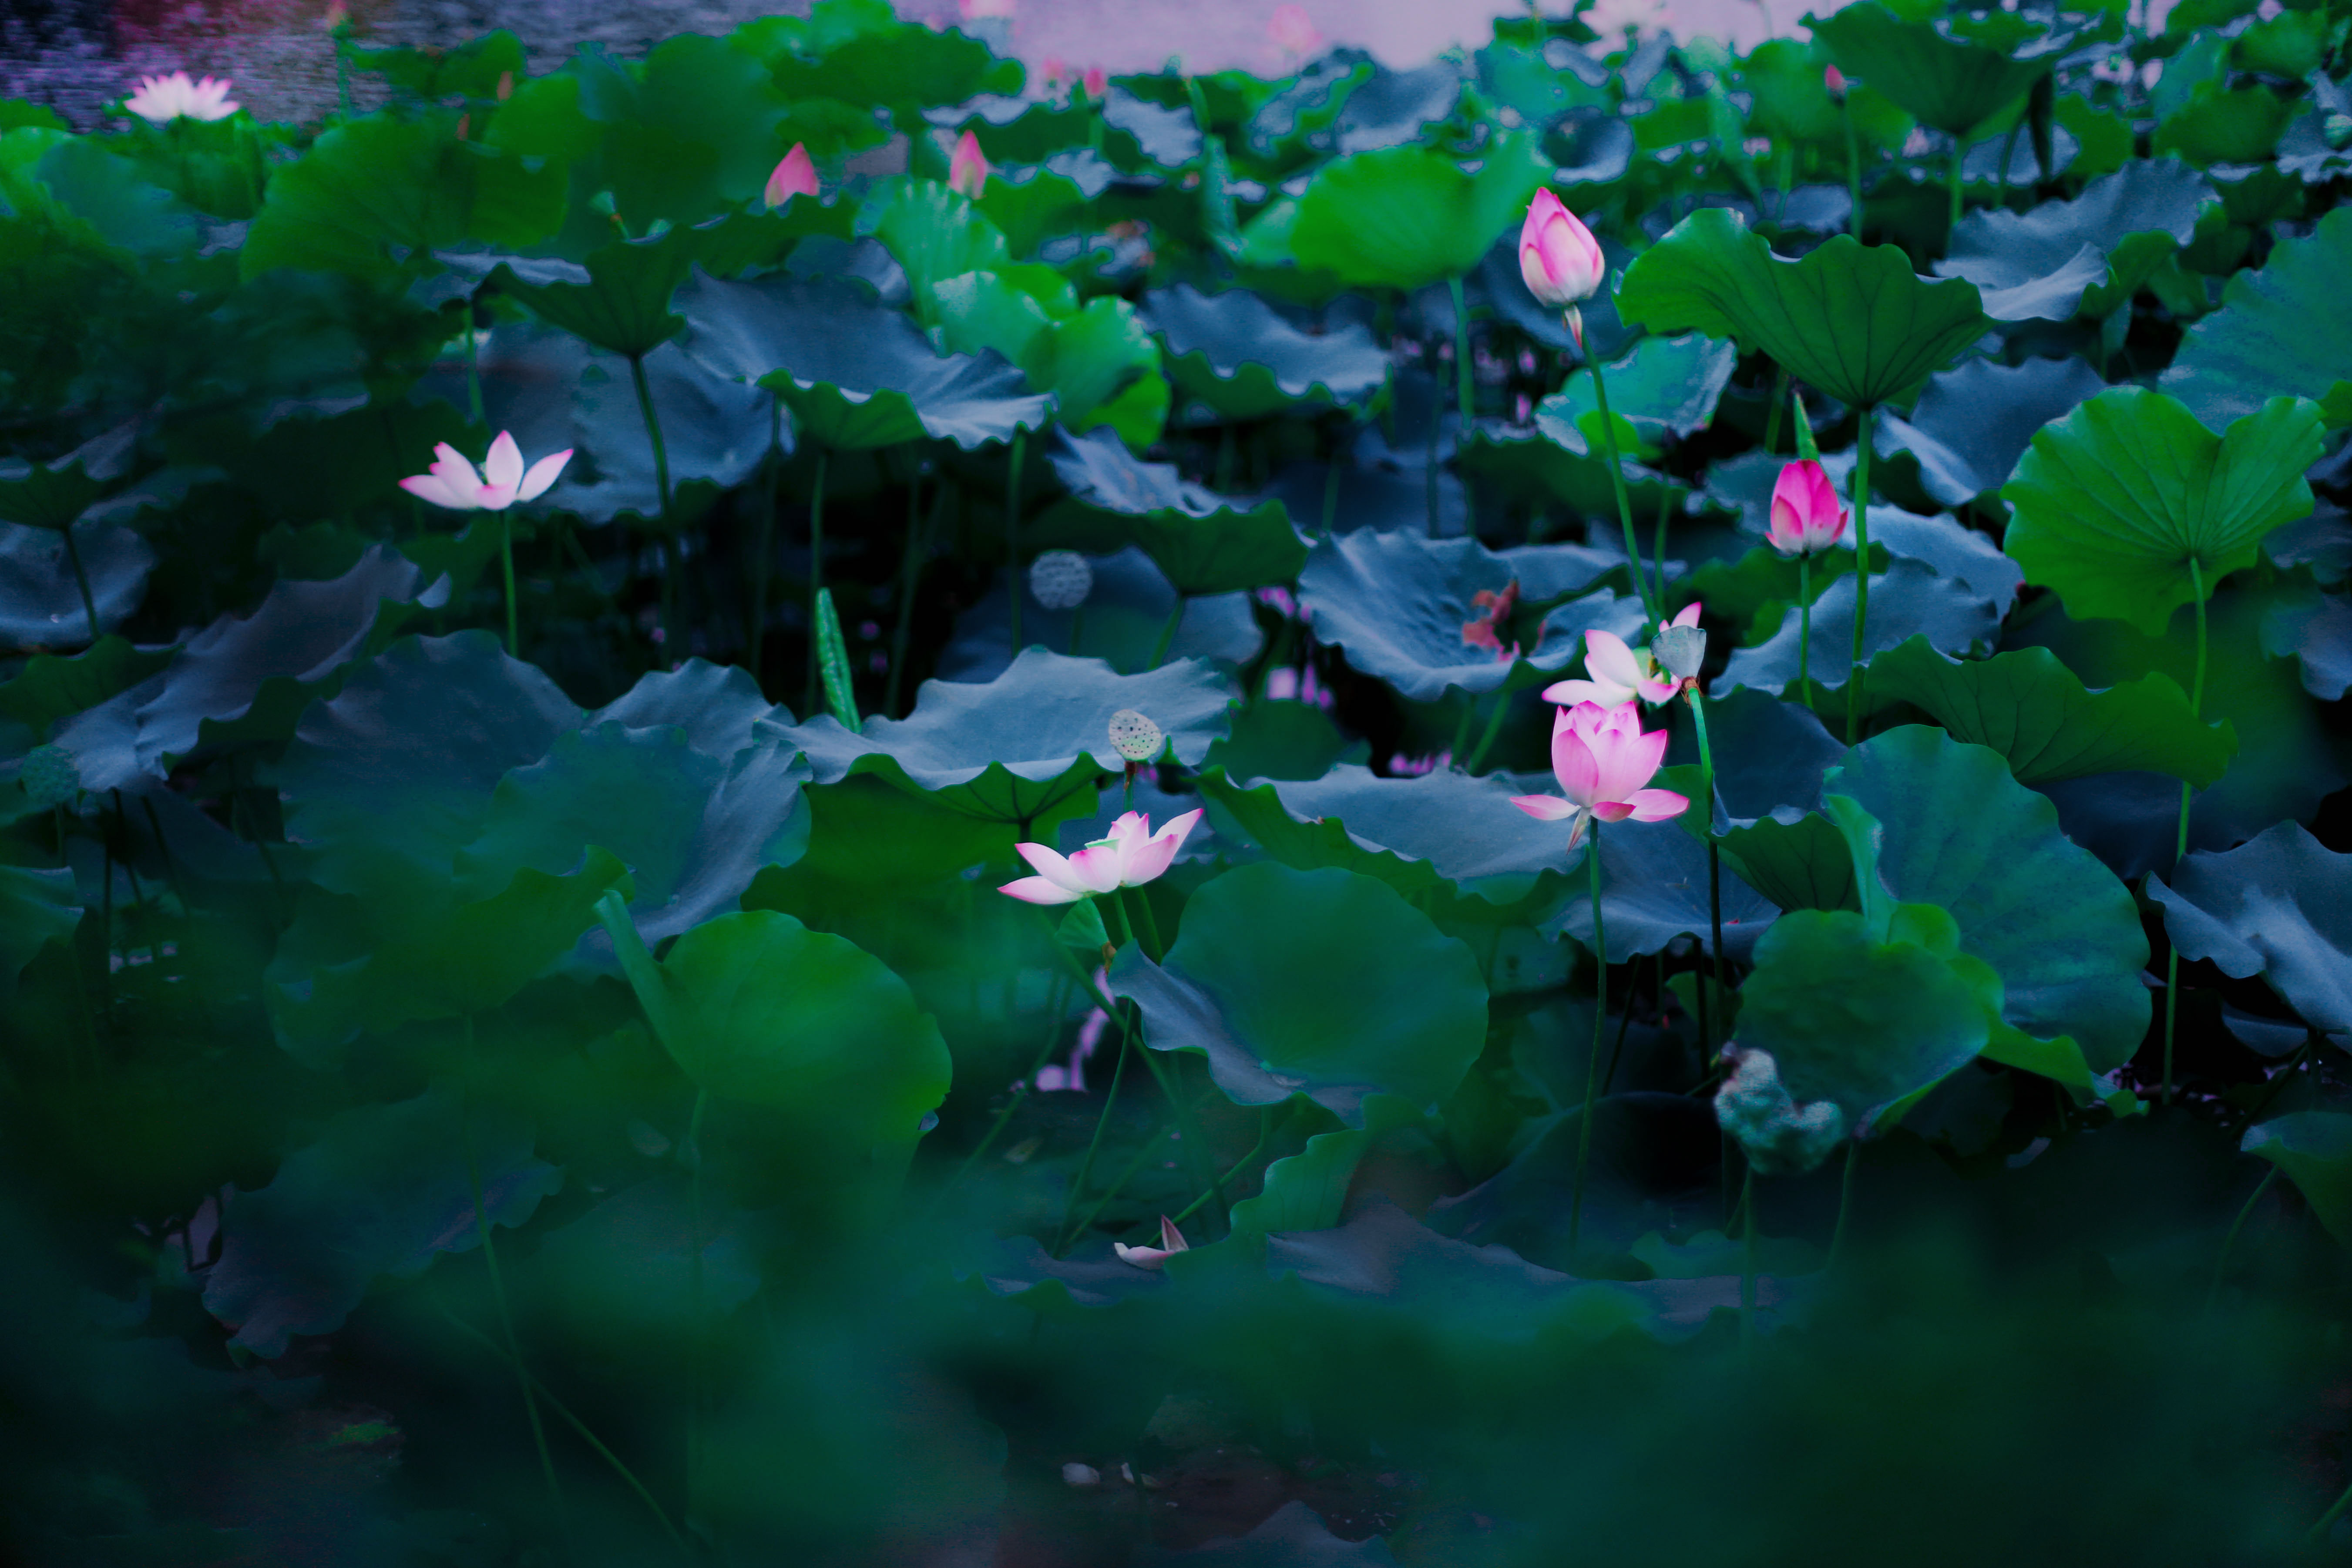 广州最美荷花池||荔湾湖公园,赏荷摄影好去处